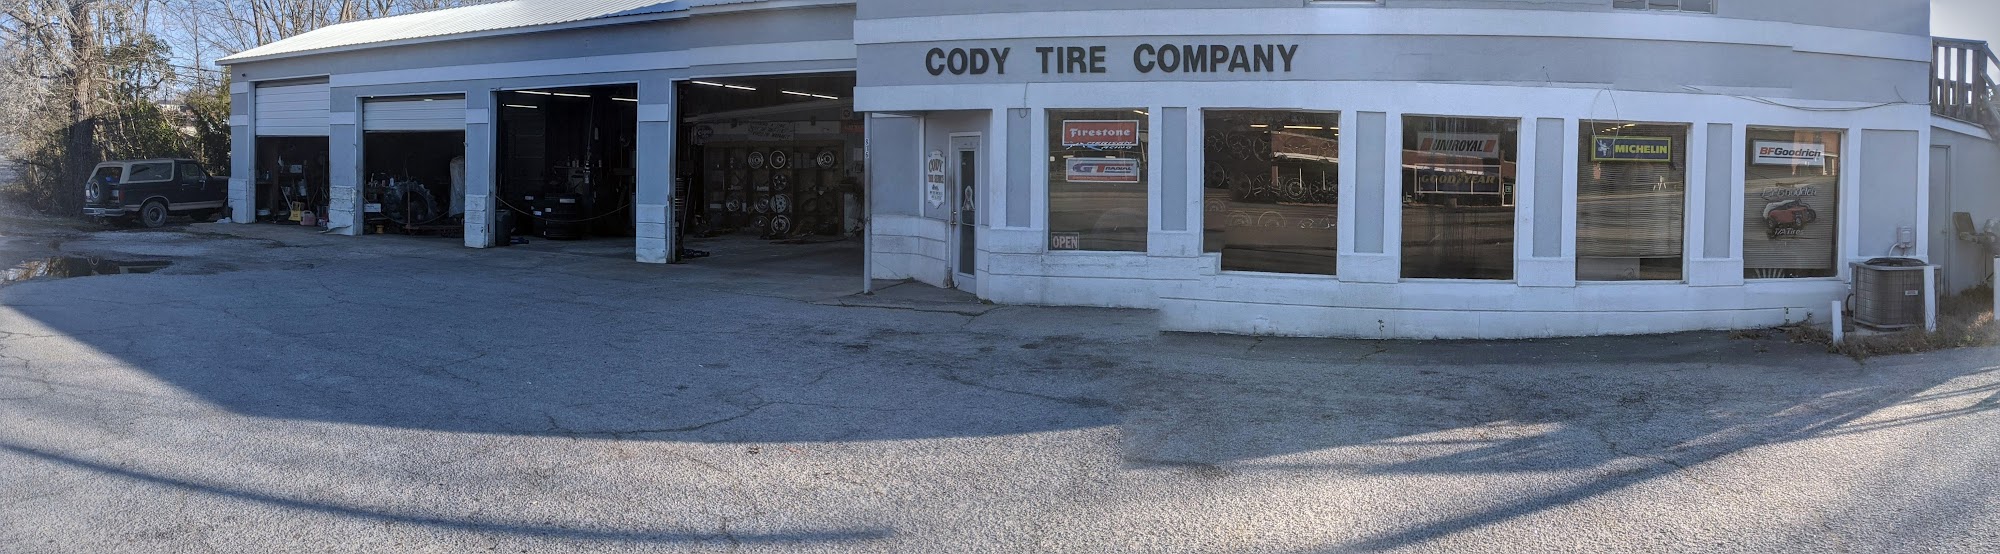 Cody Tire Company